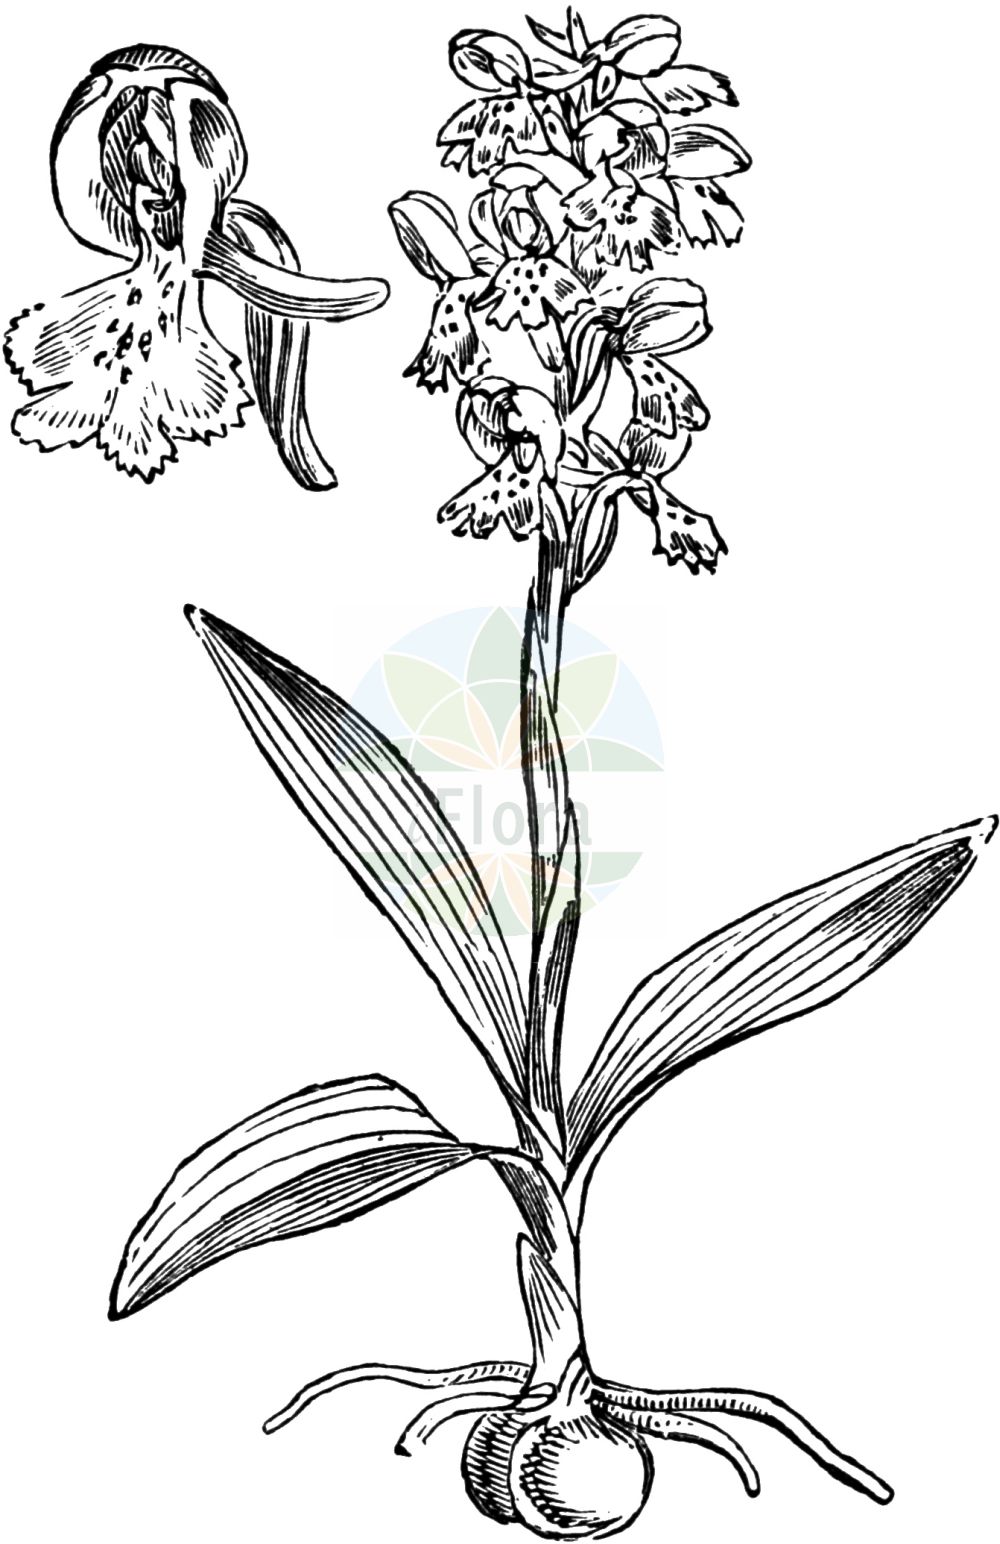 Historische Abbildung von Anacamptis morio subsp. morio (Green-winged Orchid). Das Bild zeigt Blatt, Bluete, Frucht und Same. ---- Historical Drawing of Anacamptis morio subsp. morio (Green-winged Orchid). The image is showing leaf, flower, fruit and seed.(Anacamptis morio subsp. morio,Green-winged Orchid,Orchis skorpili,Green-winged Orchid,Anacamptis,Hundswurz,Orchidaceae,Knabenkrautgewächse,Orchid family,Blatt,Bluete,Frucht,Same,leaf,flower,fruit,seed,Fitch et al. (1880))